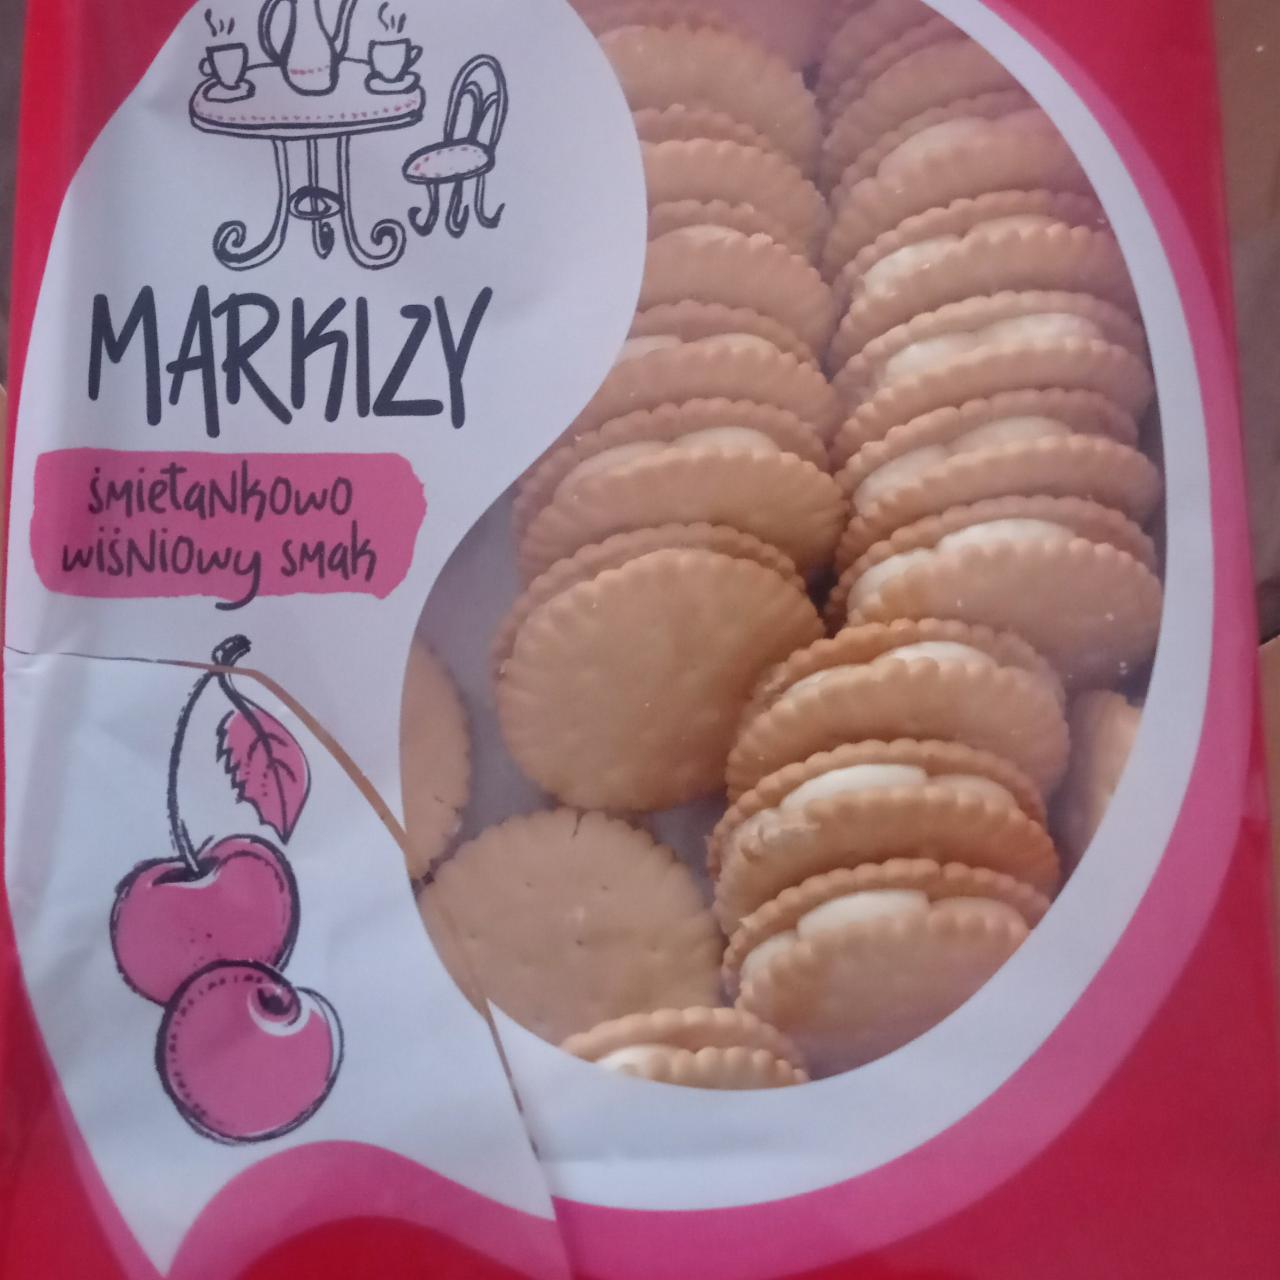 Фото - Печенье с начинкой сливочно-вишневой Markizy